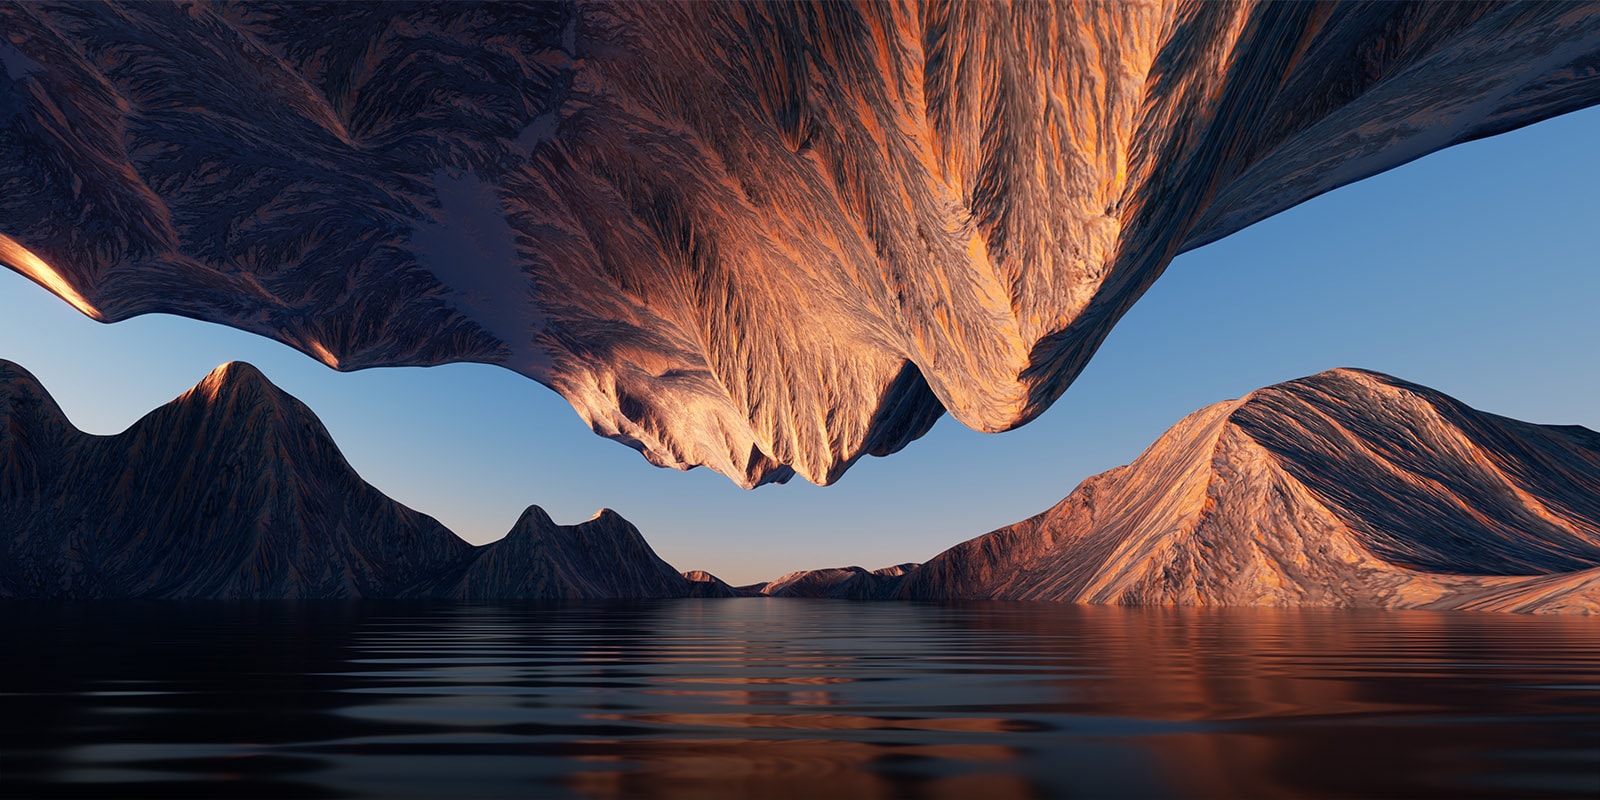 Slika narave s skalnato goro, obrnjeno drug proti drugemu od zgoraj in spodaj, prikazuje kontrast in podrobnosti.